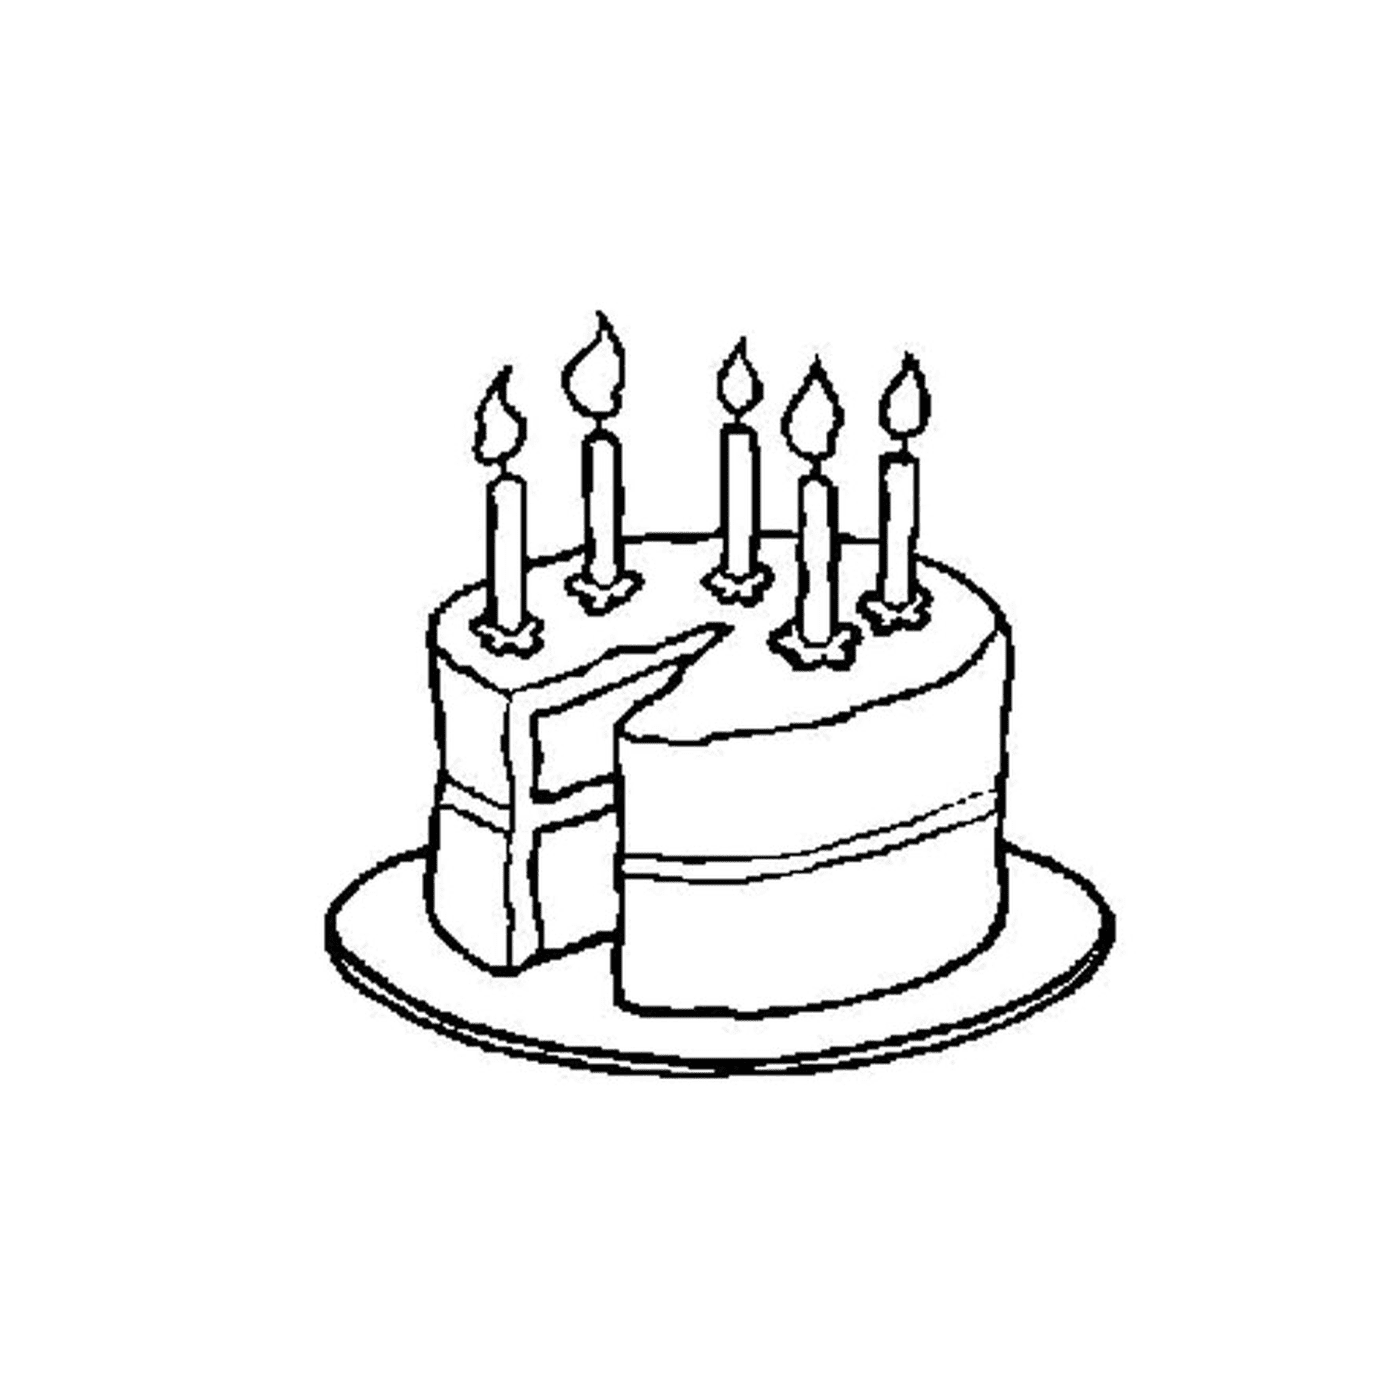  Buon compleanno torta 